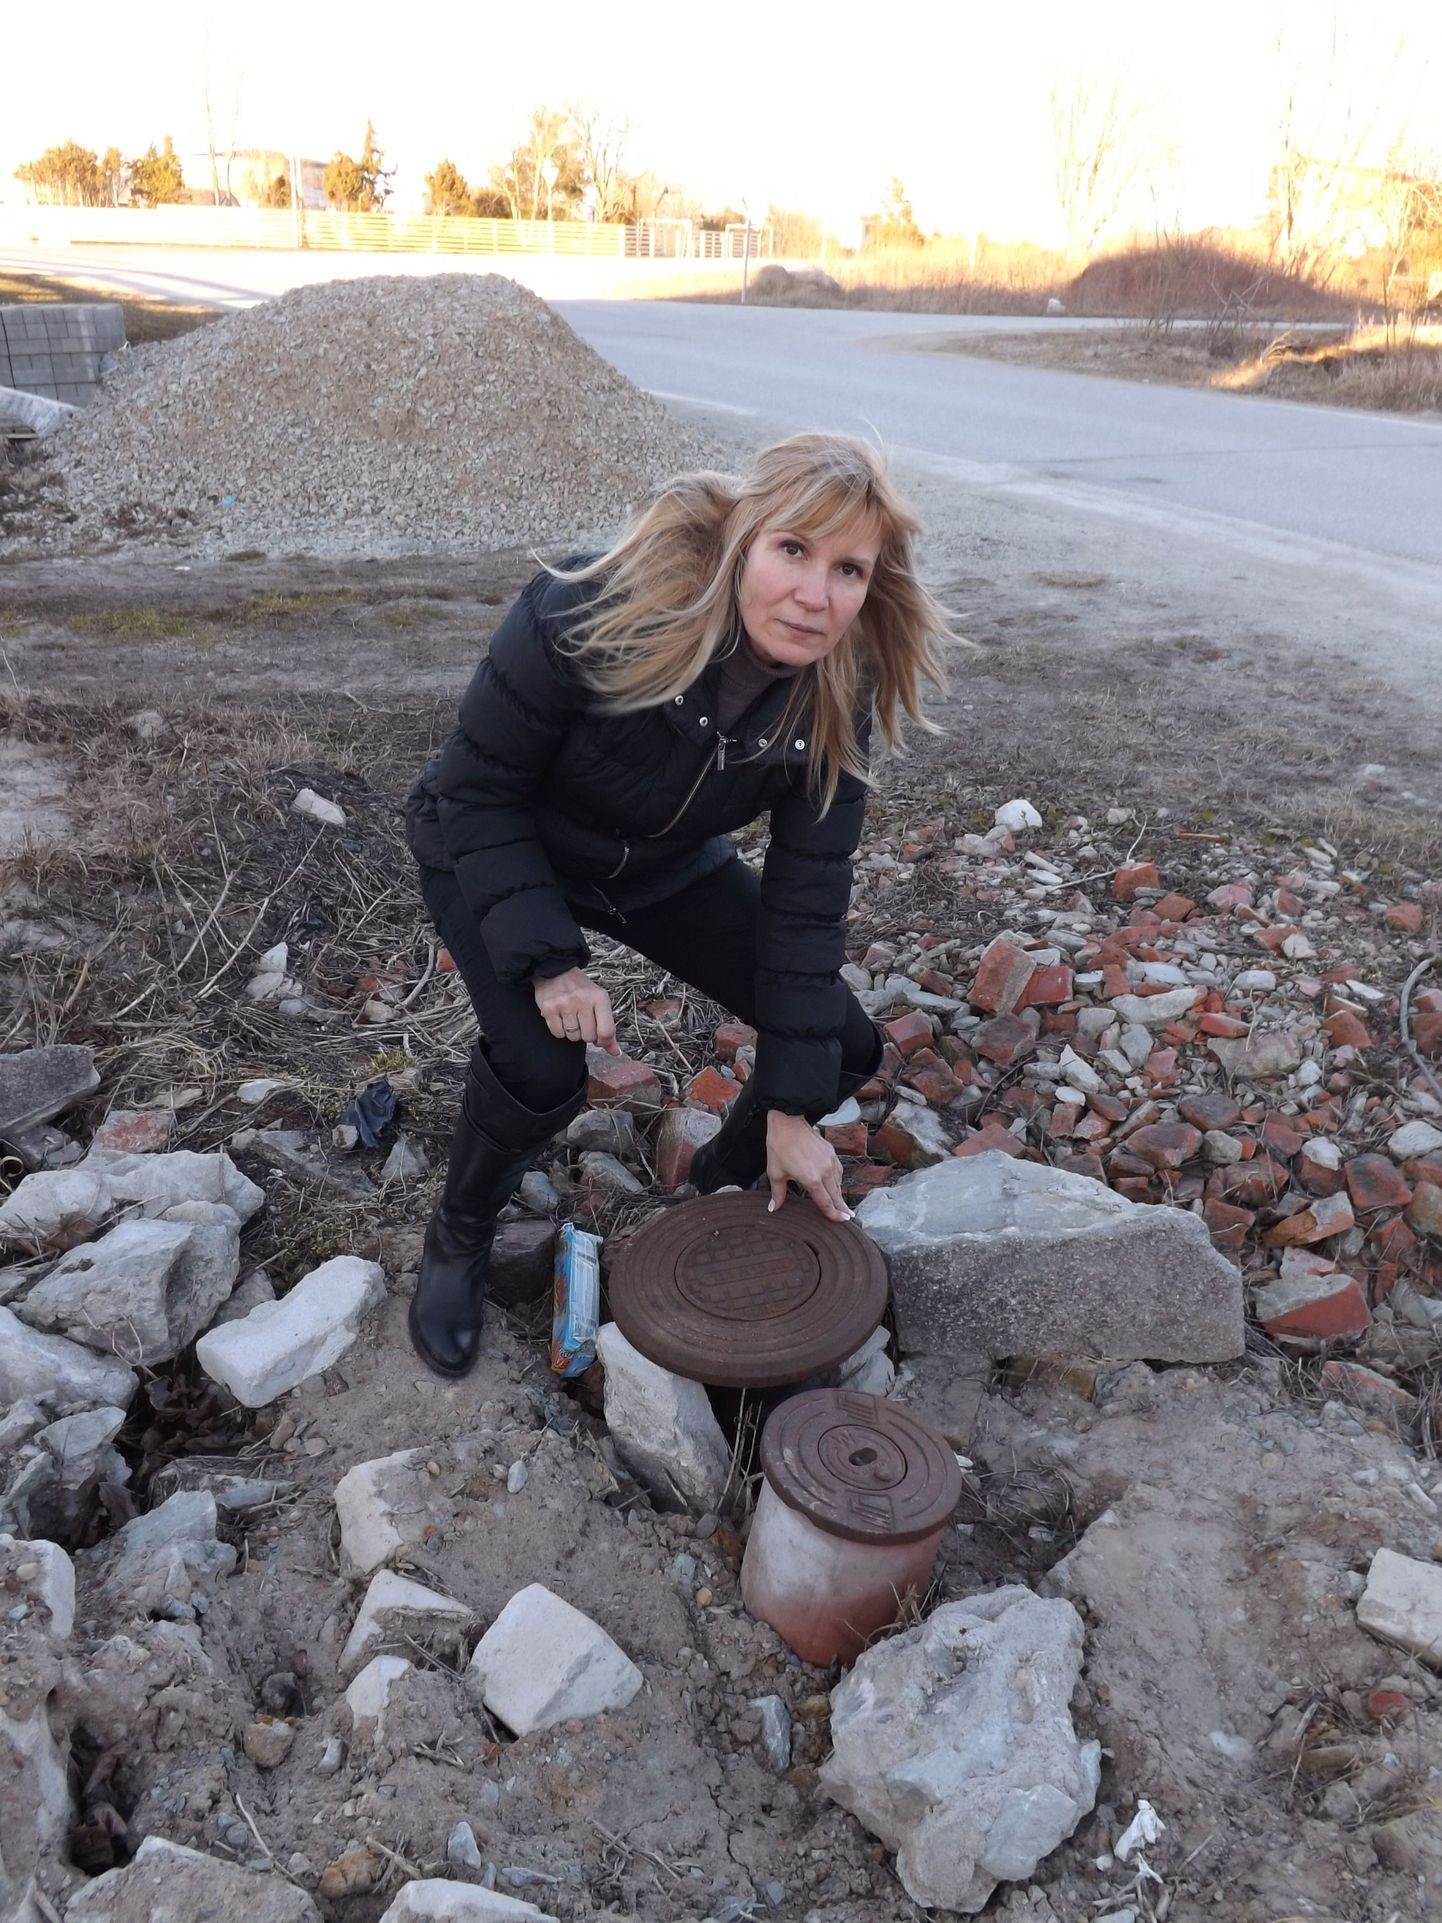 Этот канализационный люк в деревне Мурасте оказался хранителем тайн и загадок: сантехники видят где-то там, в глубине, пробку из мусора, а соседи кивают друг на друга.